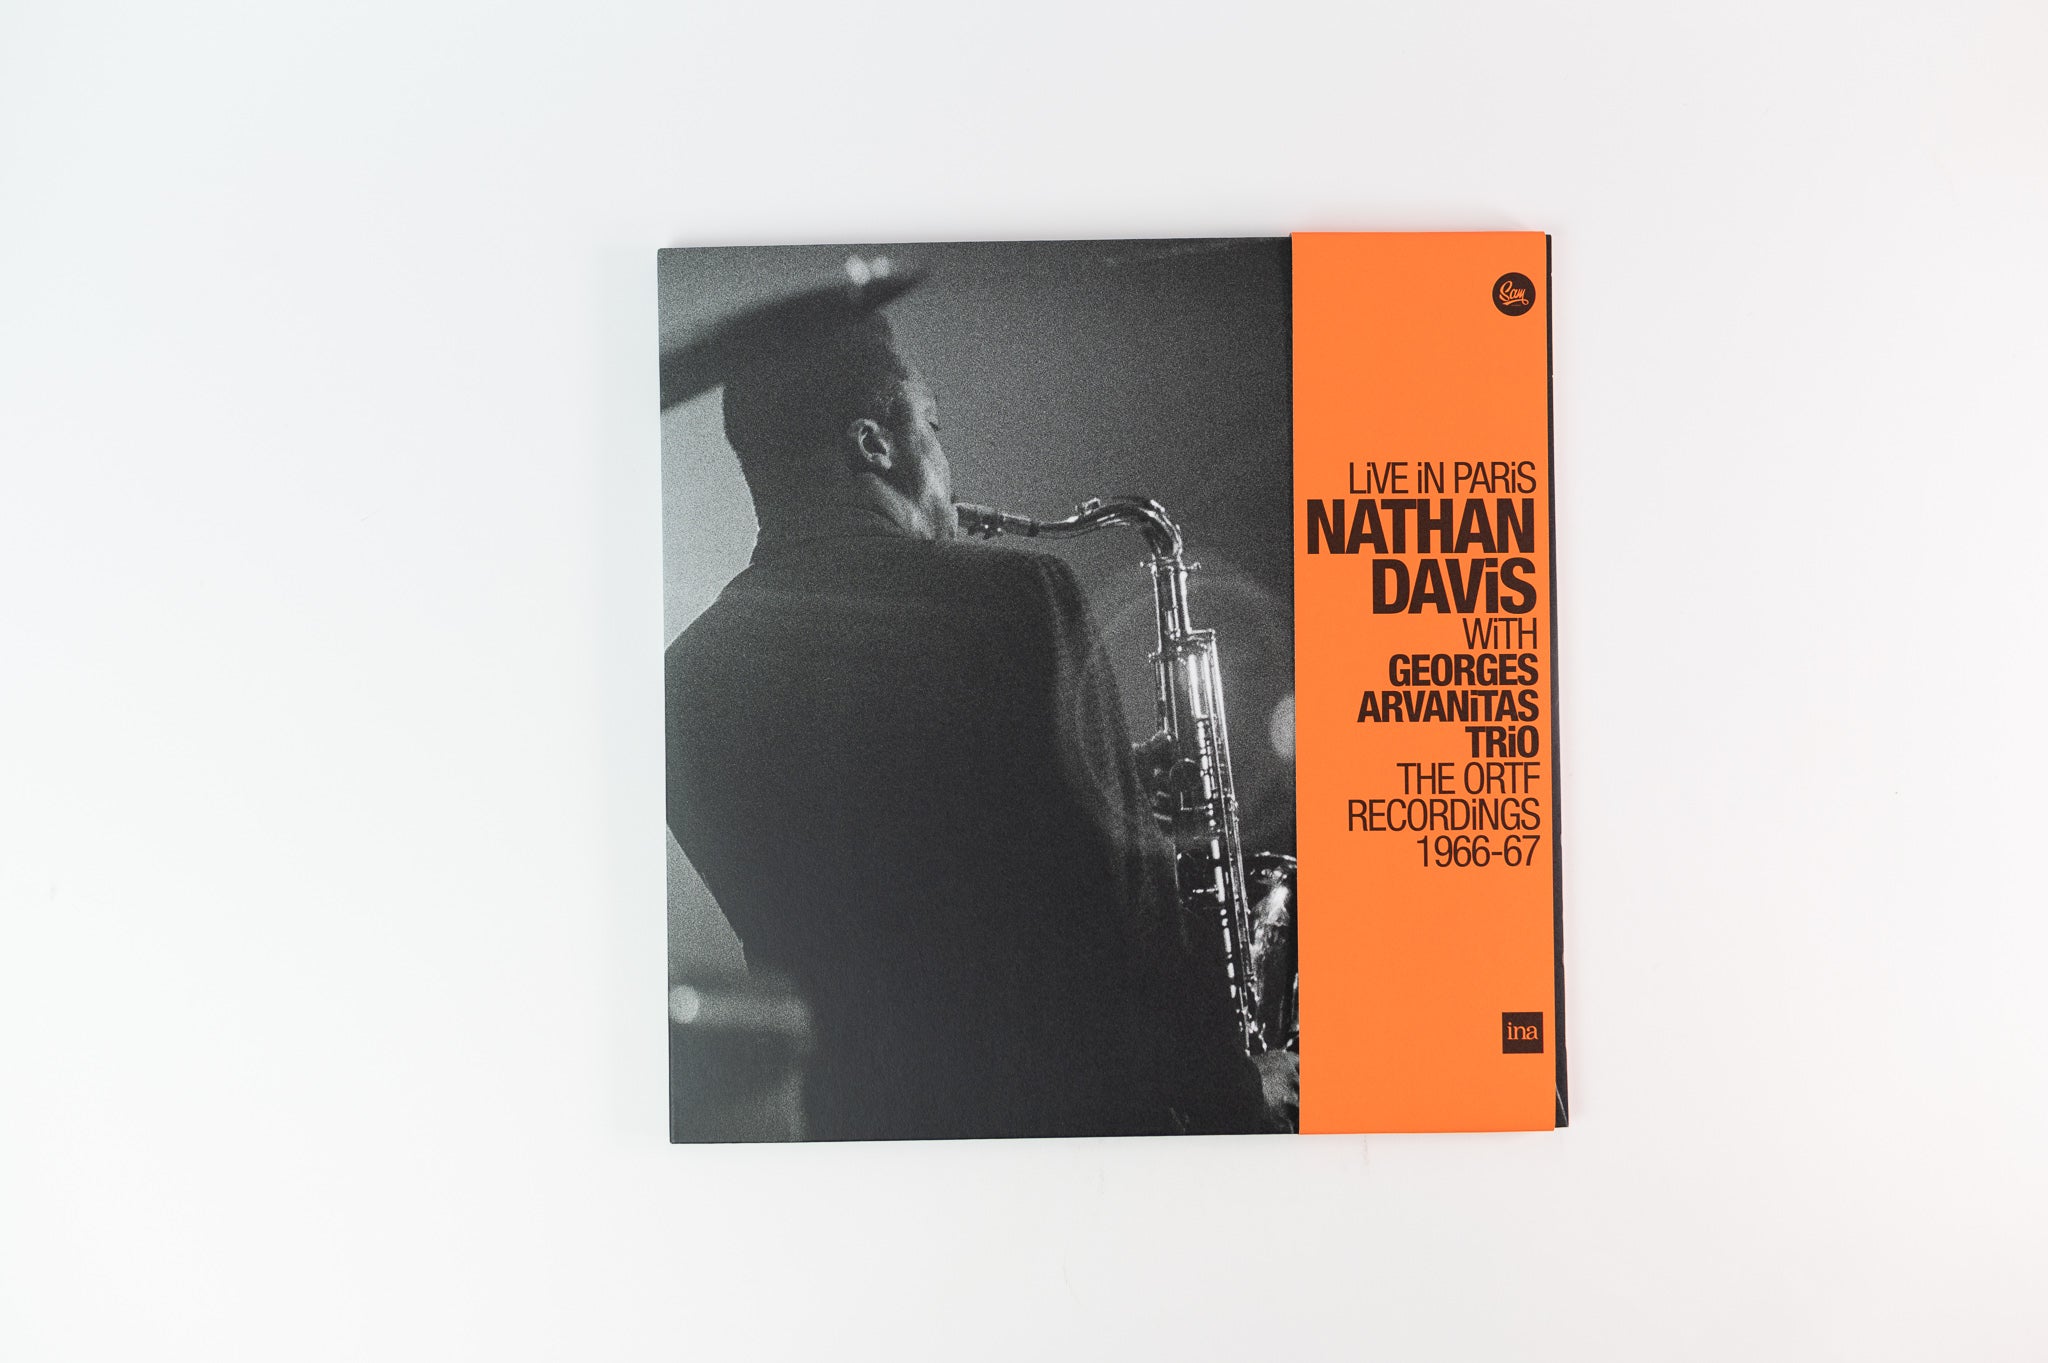 Nathan Davis. IF. LP. Jazz-